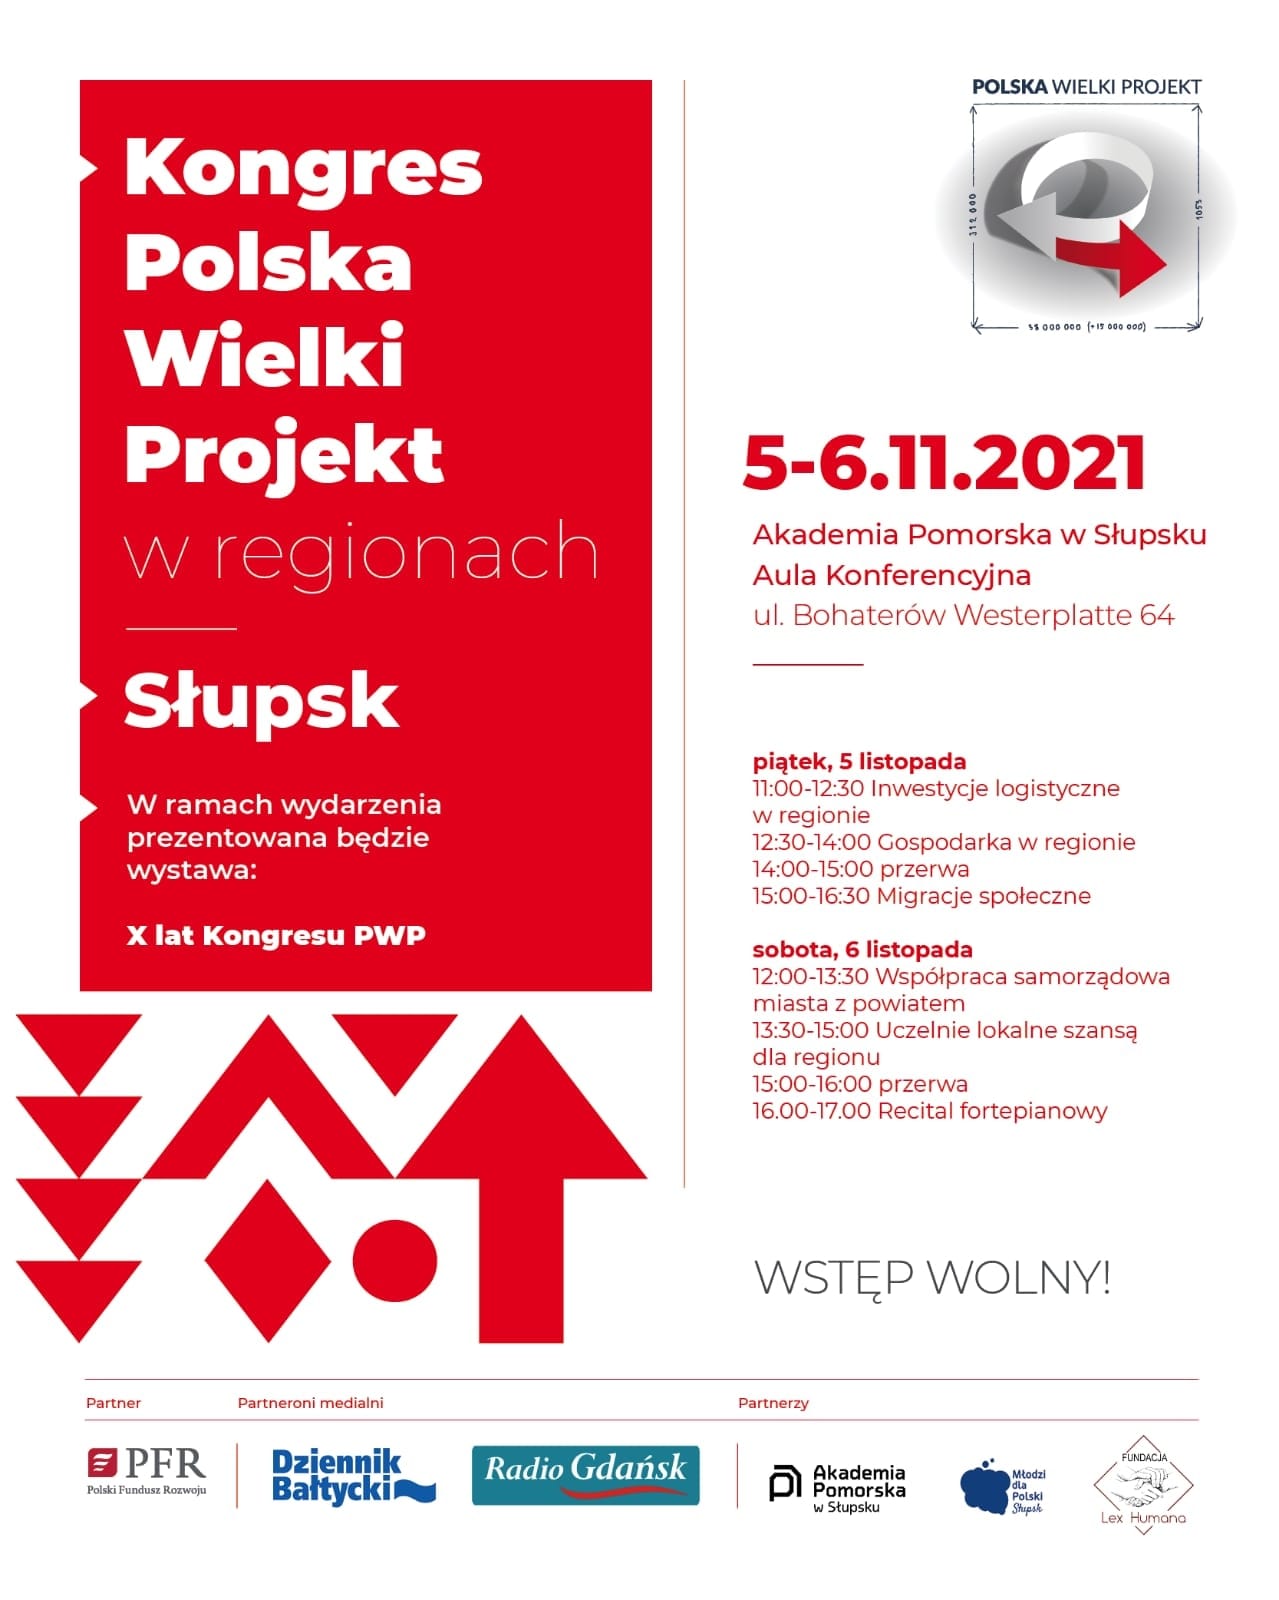 W dniach 5-6 listopada w Auli Konferencyjnej Akademii Pomorskiej w Słupsku odbędzie się kolejna lokalna edycja Kongresu Polska Wielki Projekt poświęcona wyzwaniom i rozwiązaniom dla Pomorza Środkowego.